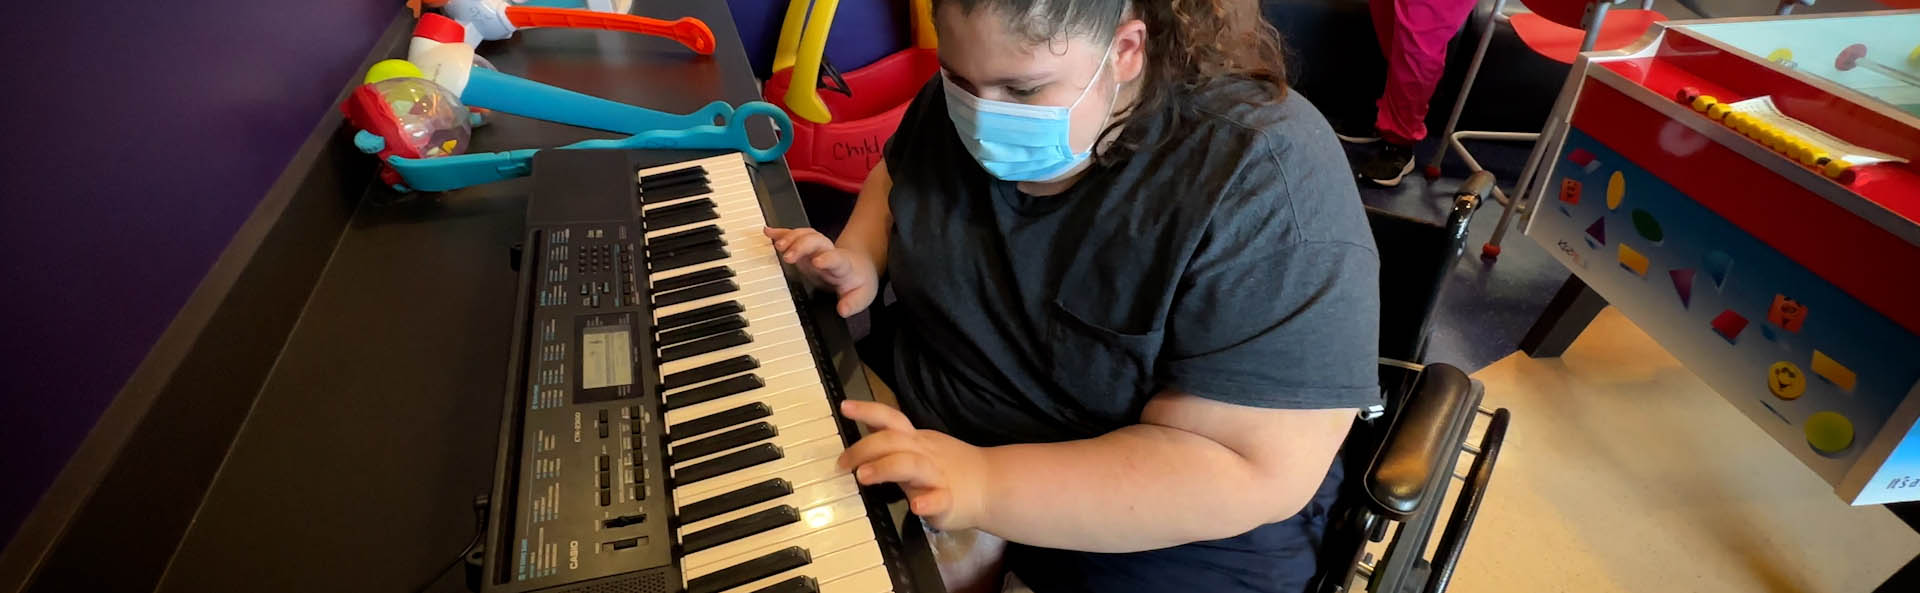 Un niño con una máscara jugando en un teclado